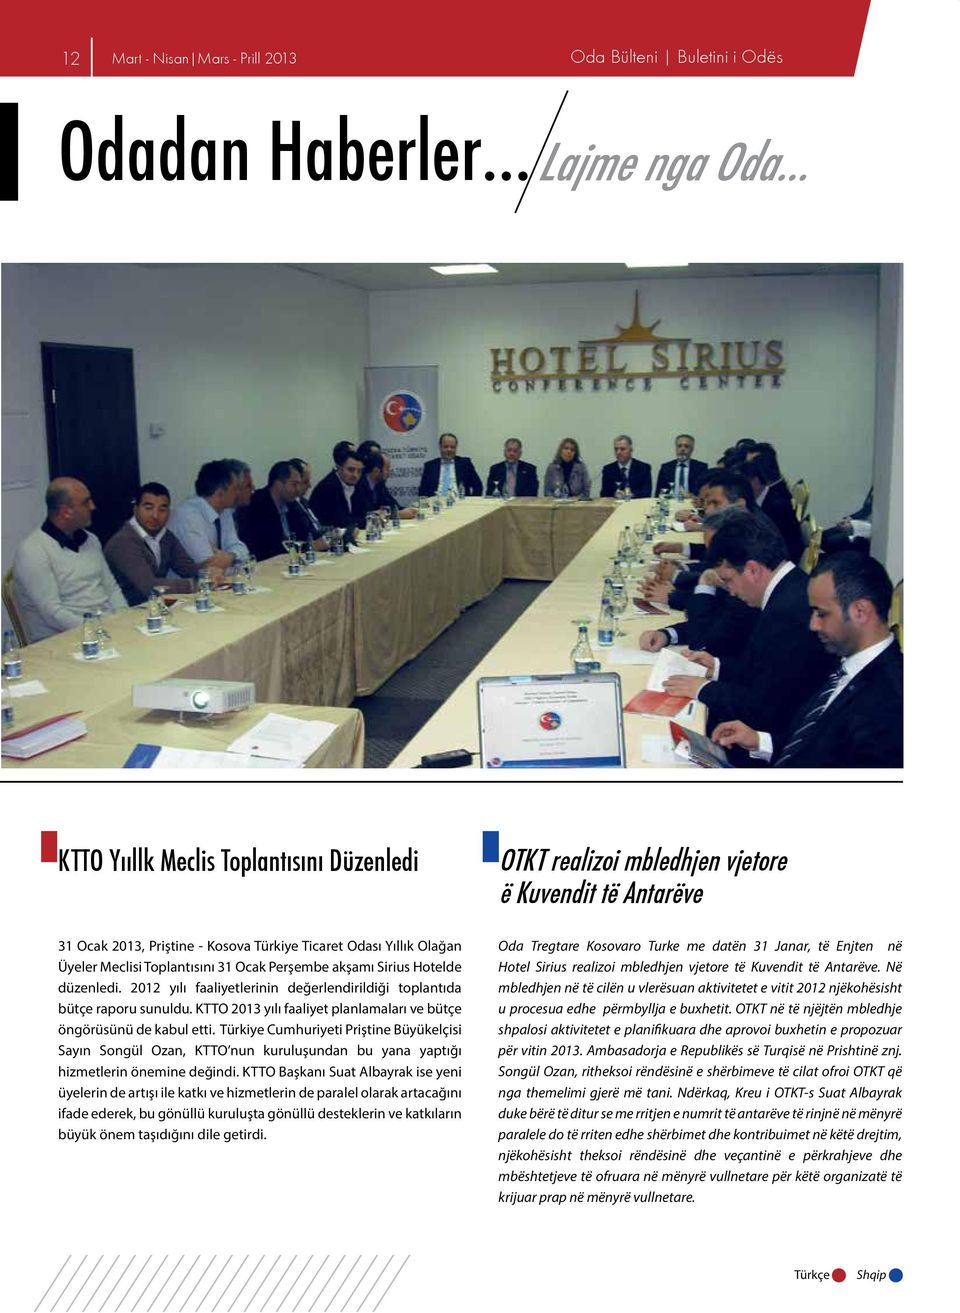 KTTO 2013 yılı faaliyet planlamaları ve bütçe öngörüsünü de kabul etti. Türkiye Cumhuriyeti Priştine Büyükelçisi Sayın Songül Ozan, KTTO nun kuruluşundan bu yana yaptığı hizmetlerin önemine değindi.